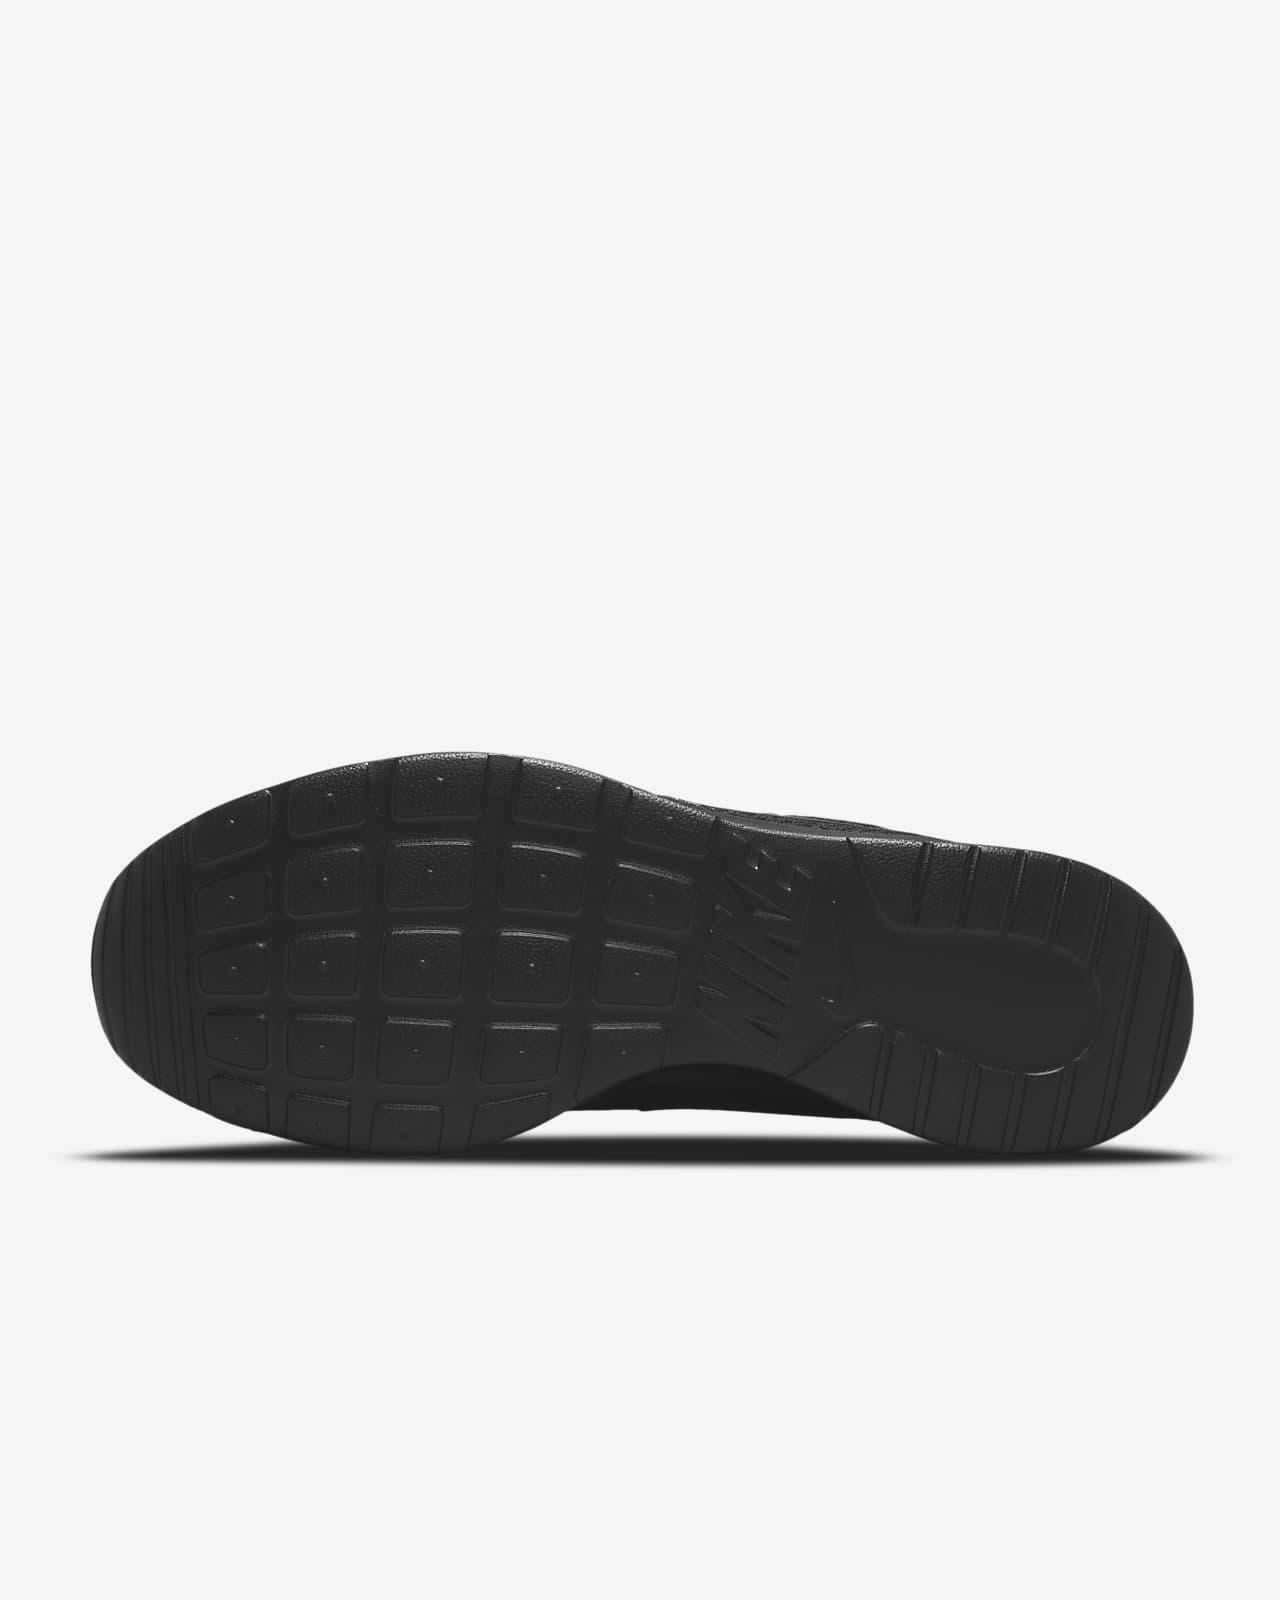 Nike Snakeskin Sandals for Women | Mercari